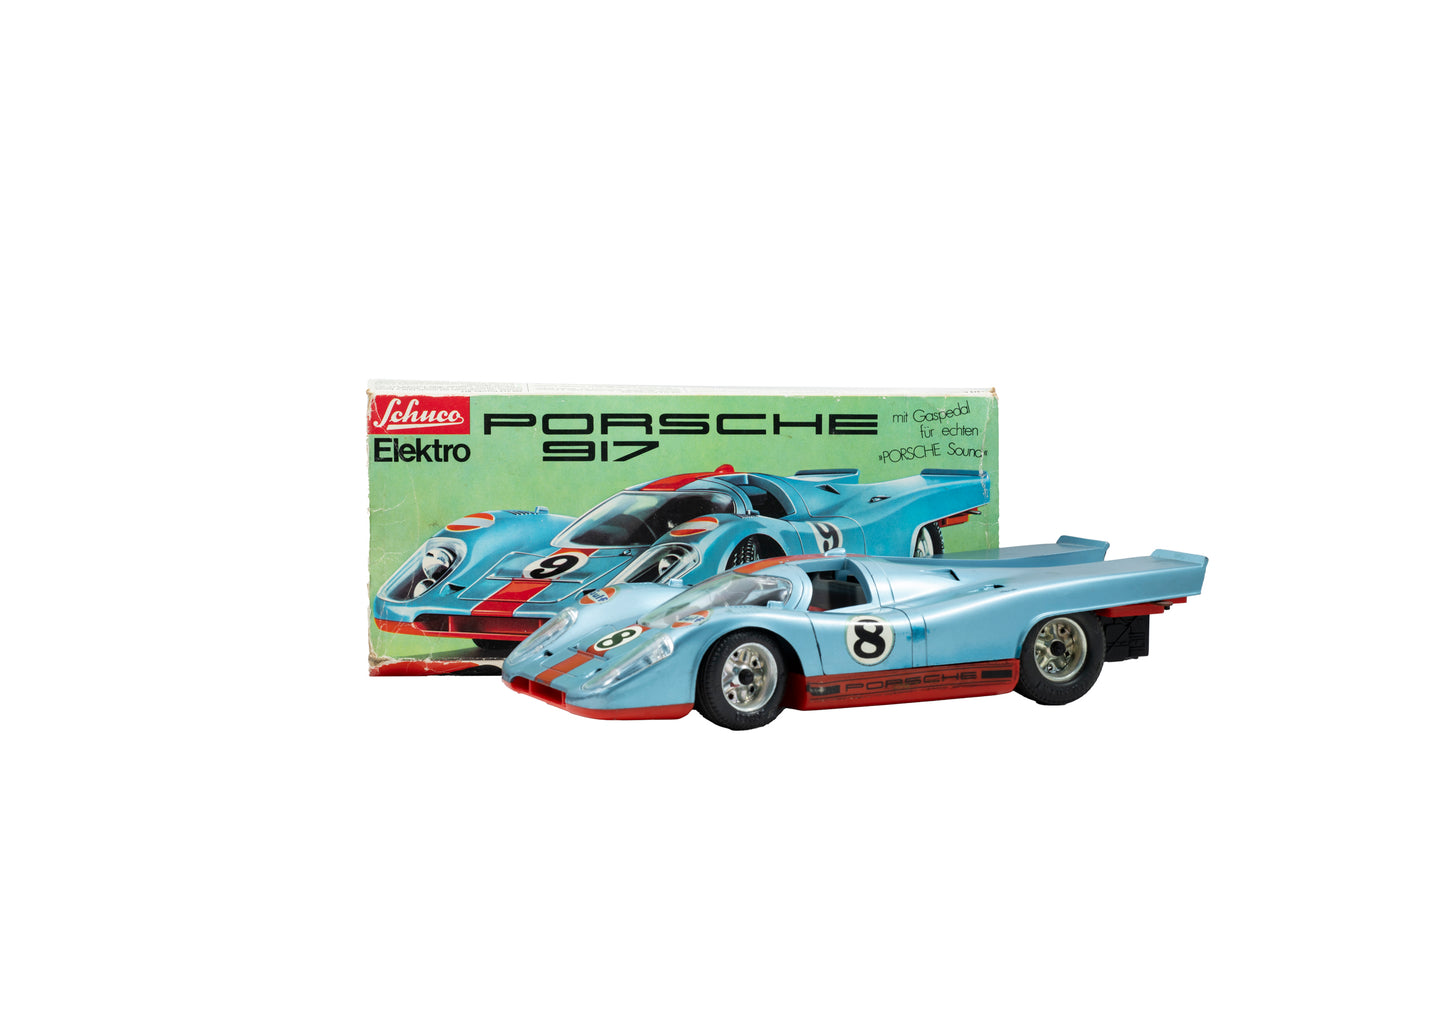 Porsche 917 'Elektro' Toy from Schuco